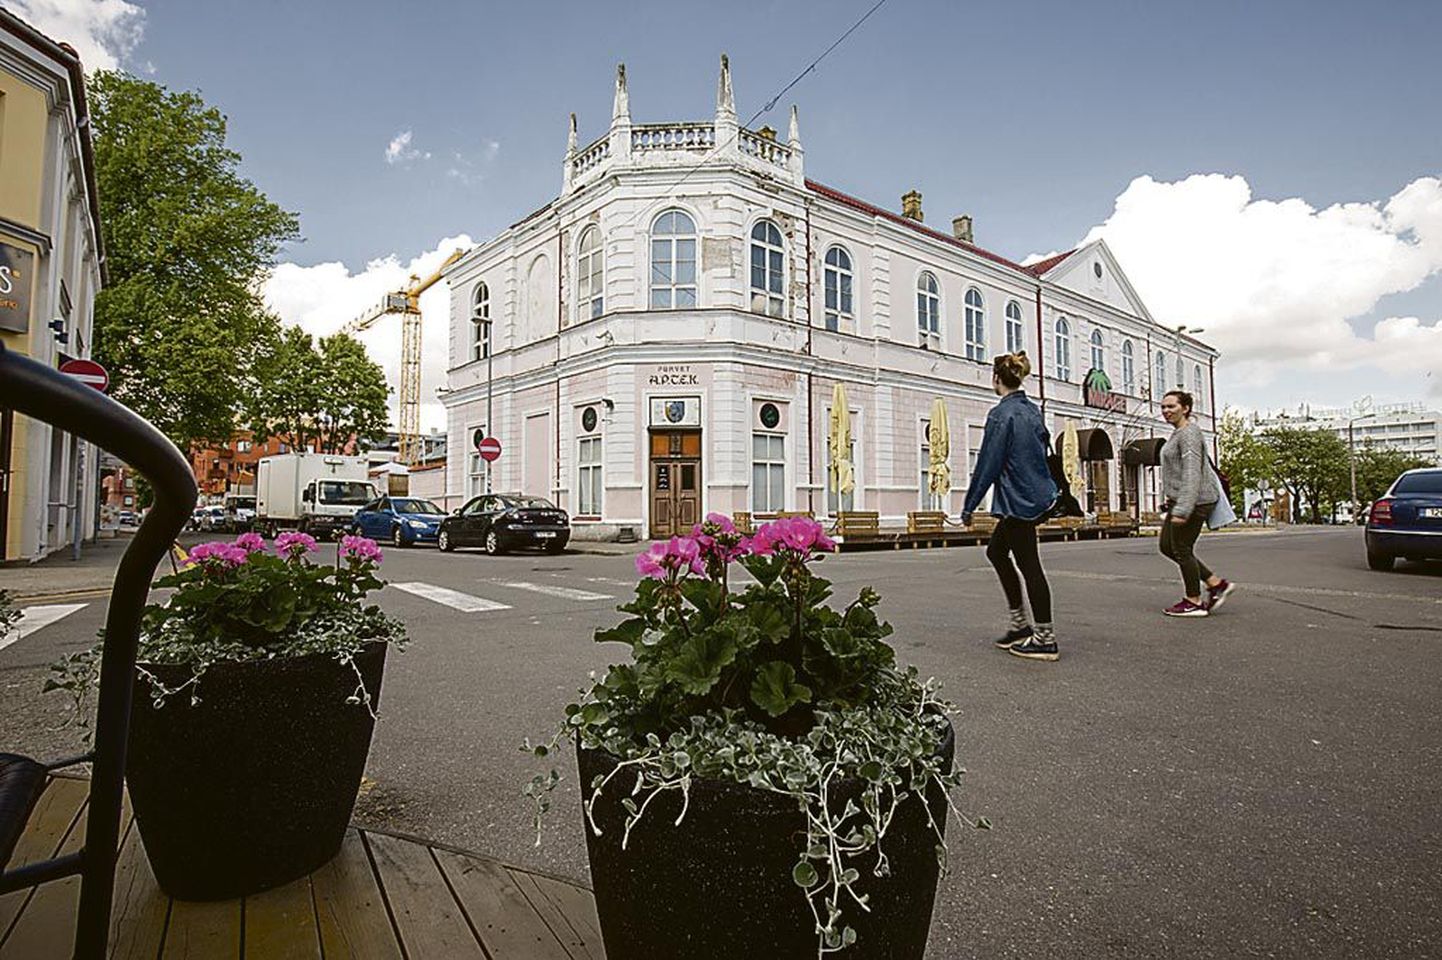 Hommiku ja Rüütli tänava ristis asub Pärnu ööelu keskus ja soojad suveilmad tähendavad rohkem melu tänavatelgi.